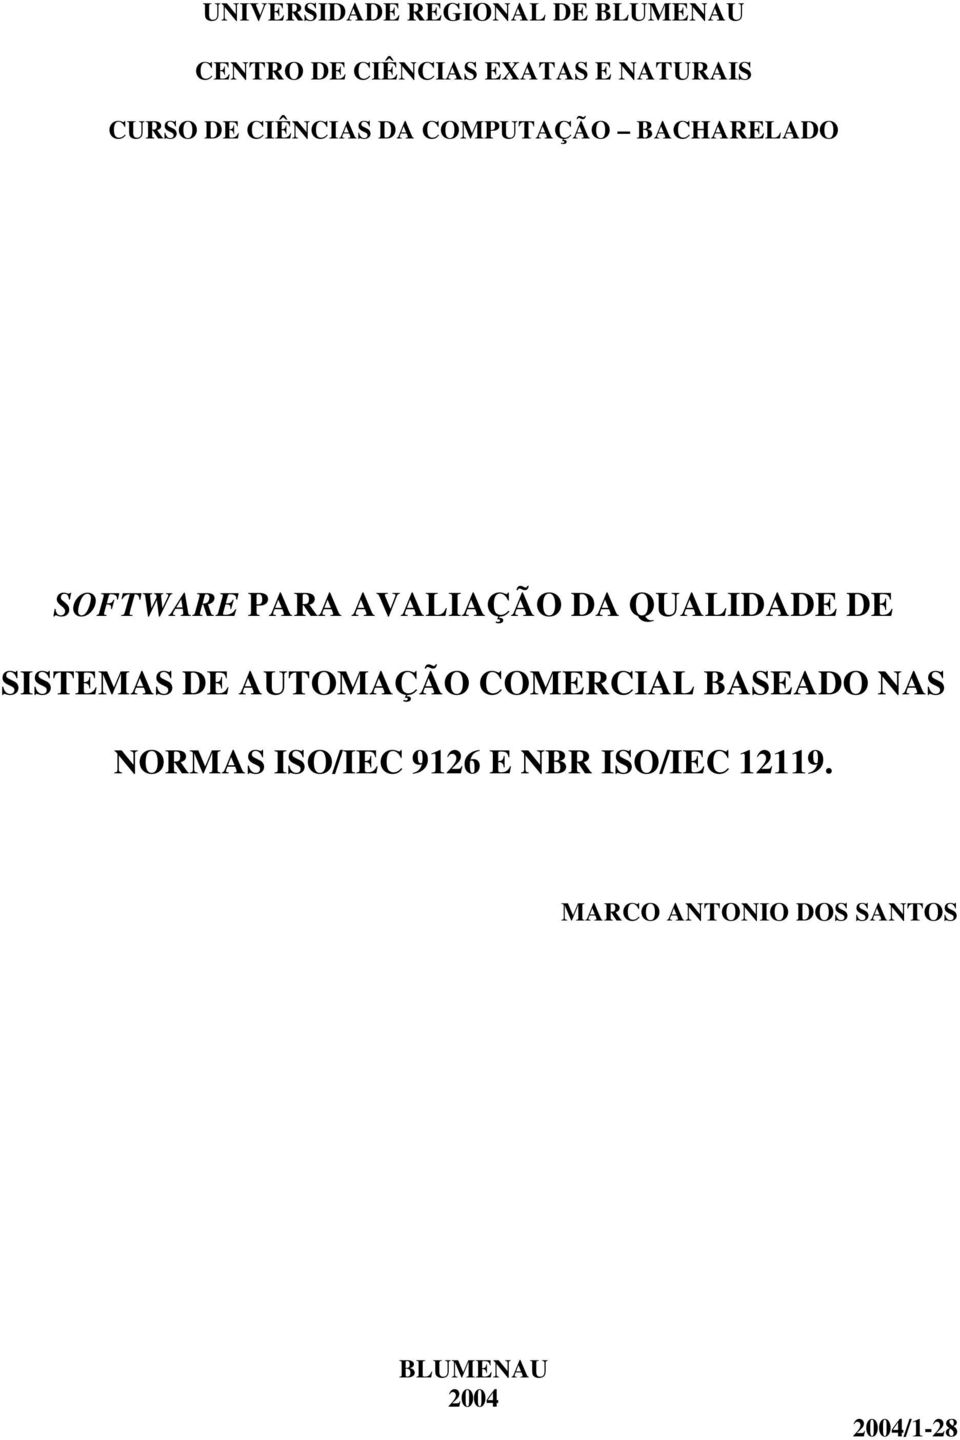 QUALIDADE DE SISTEMAS DE AUTOMAÇÃO COMERCIAL BASEADO NAS NORMAS ISO/IEC